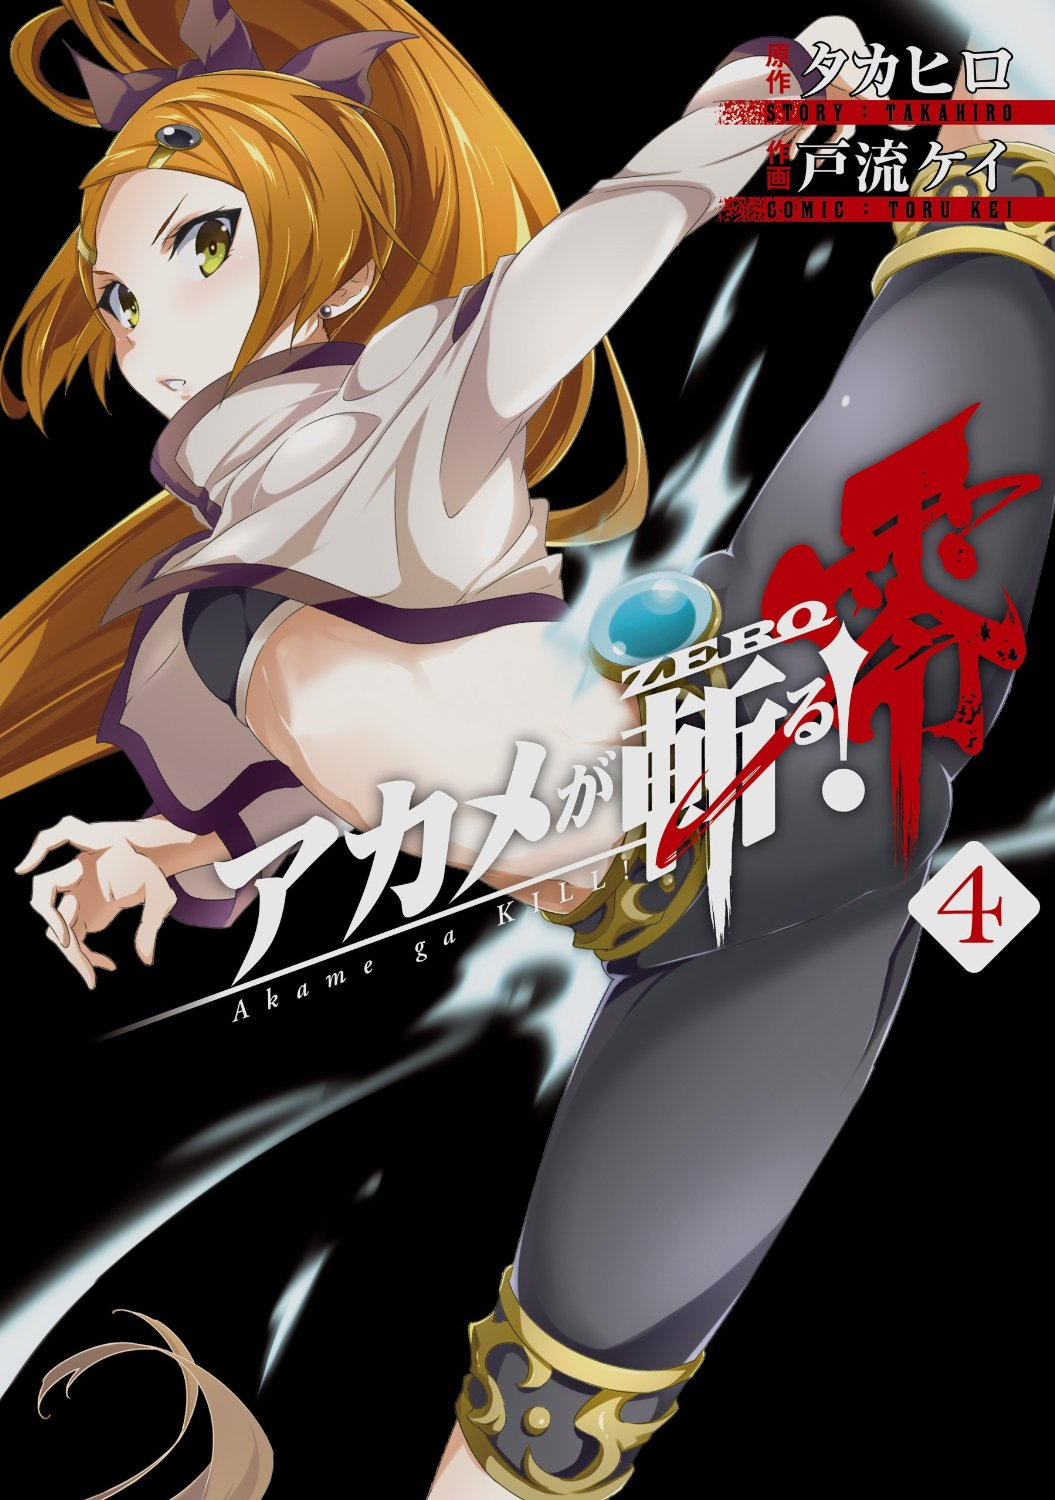 Akame ga Kill! Zero: Everything to know about the prequel manga series